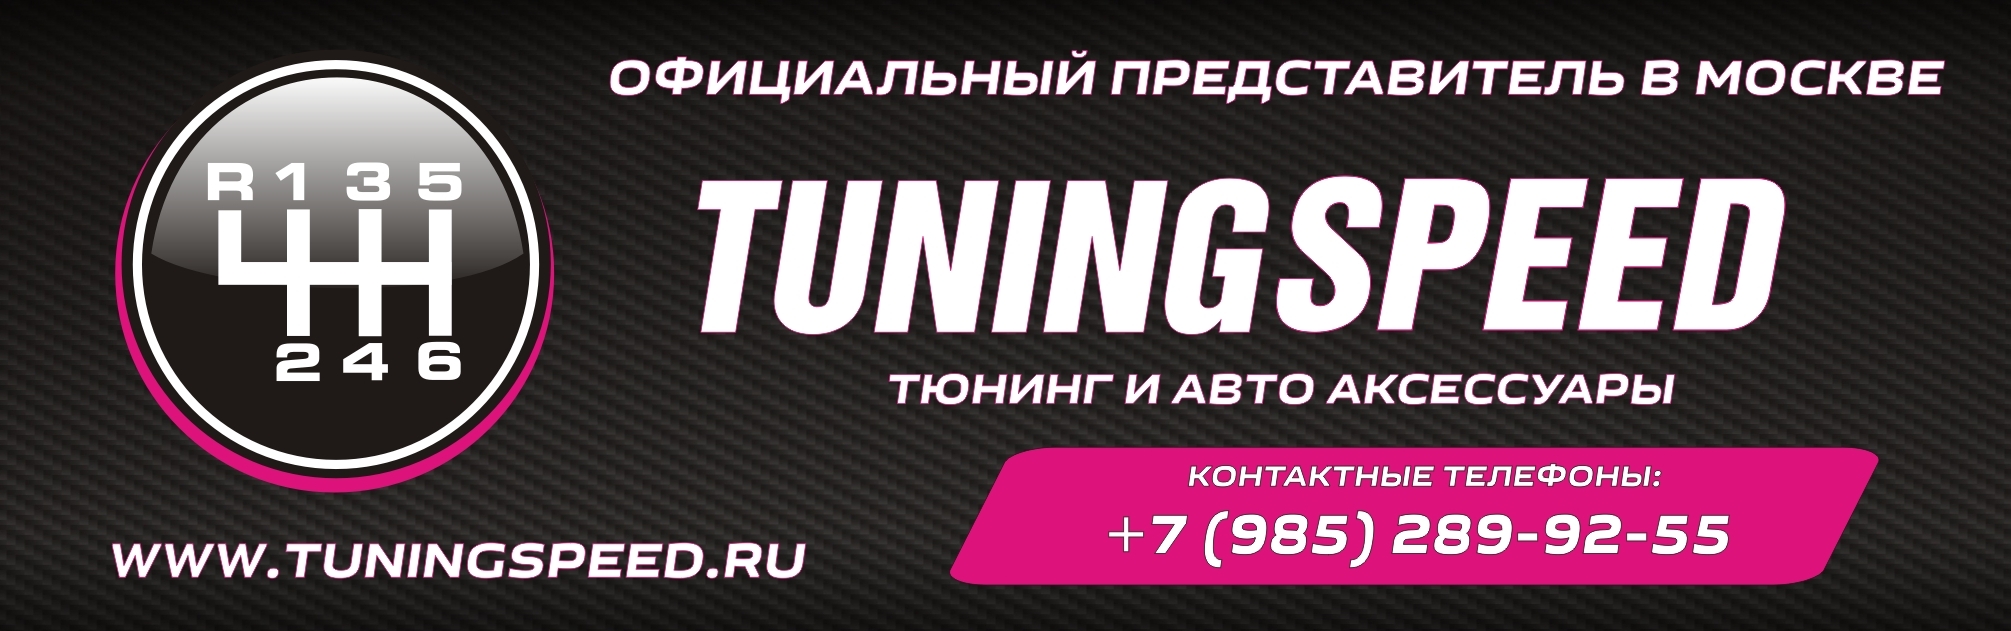 Официальный представитель в Москве компании Tuningspeed.ru